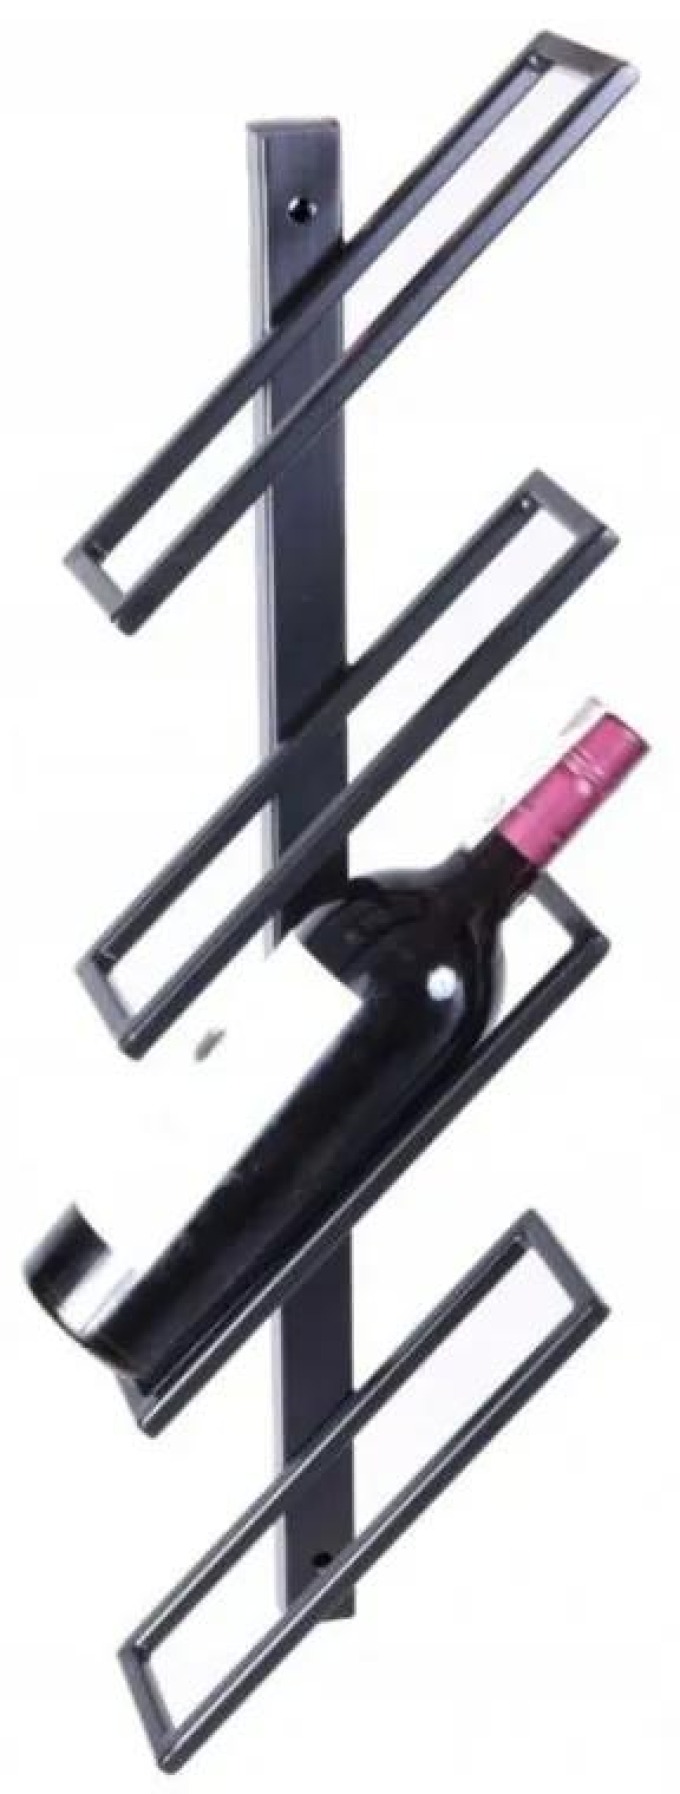 Elegantní stojan na víno ve skandinávském stylu pro 4 lahve vína s precizním zpracováním a moderním designem